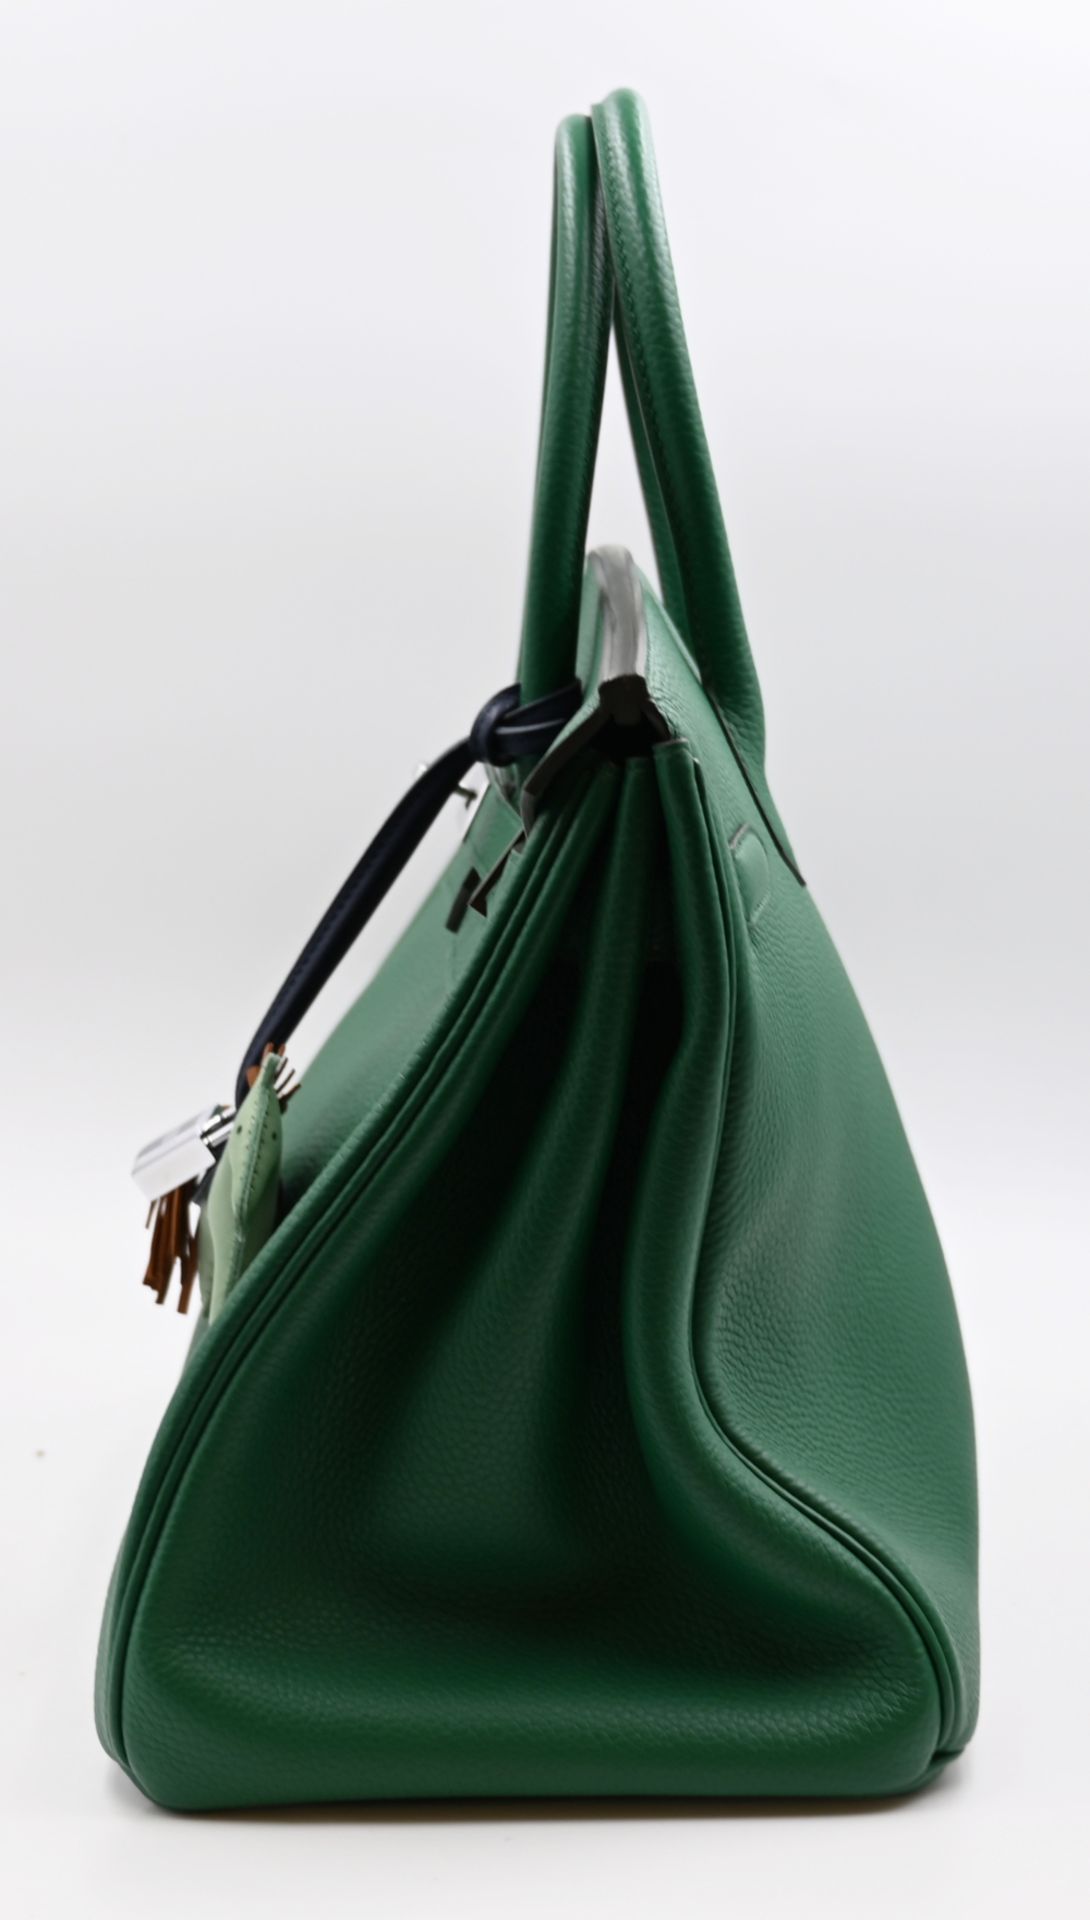 1 Damenhandtasche HERMÈS Modell: Birkin 35 grün - Bild 4 aus 13